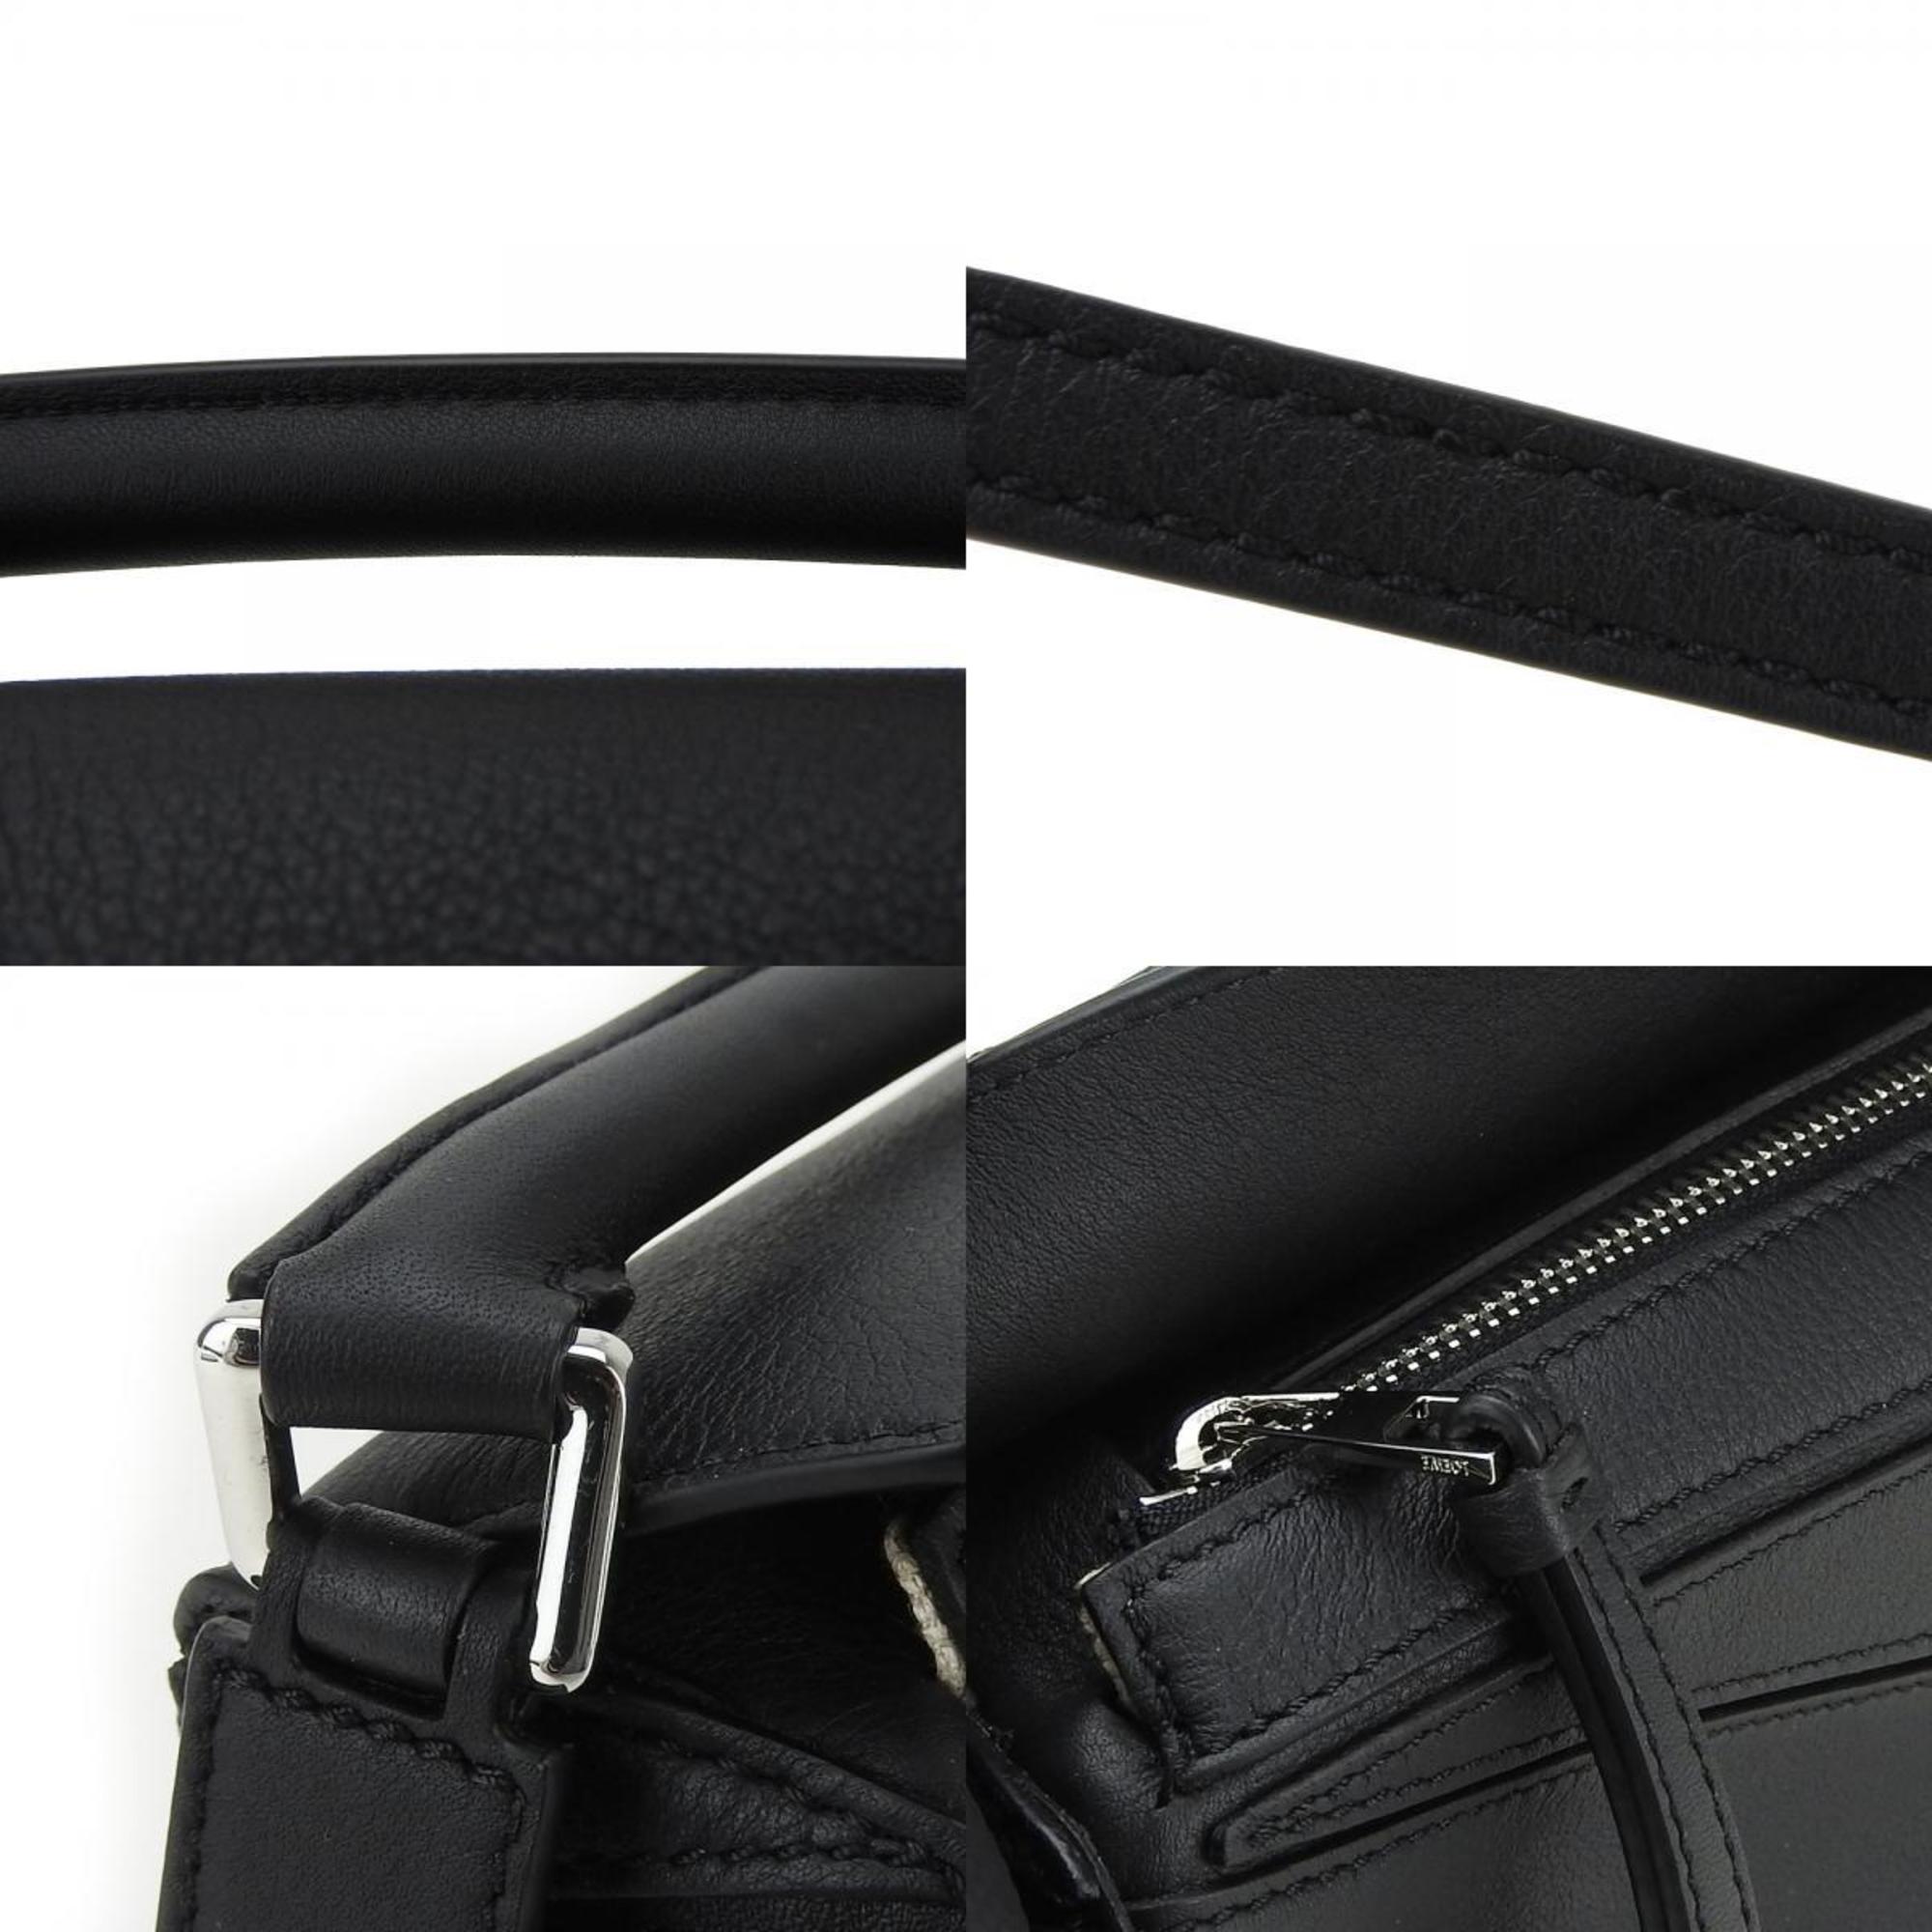 LOEWE Shoulder Bag Puzzle 322.30.U95 Black Handbag Ladies